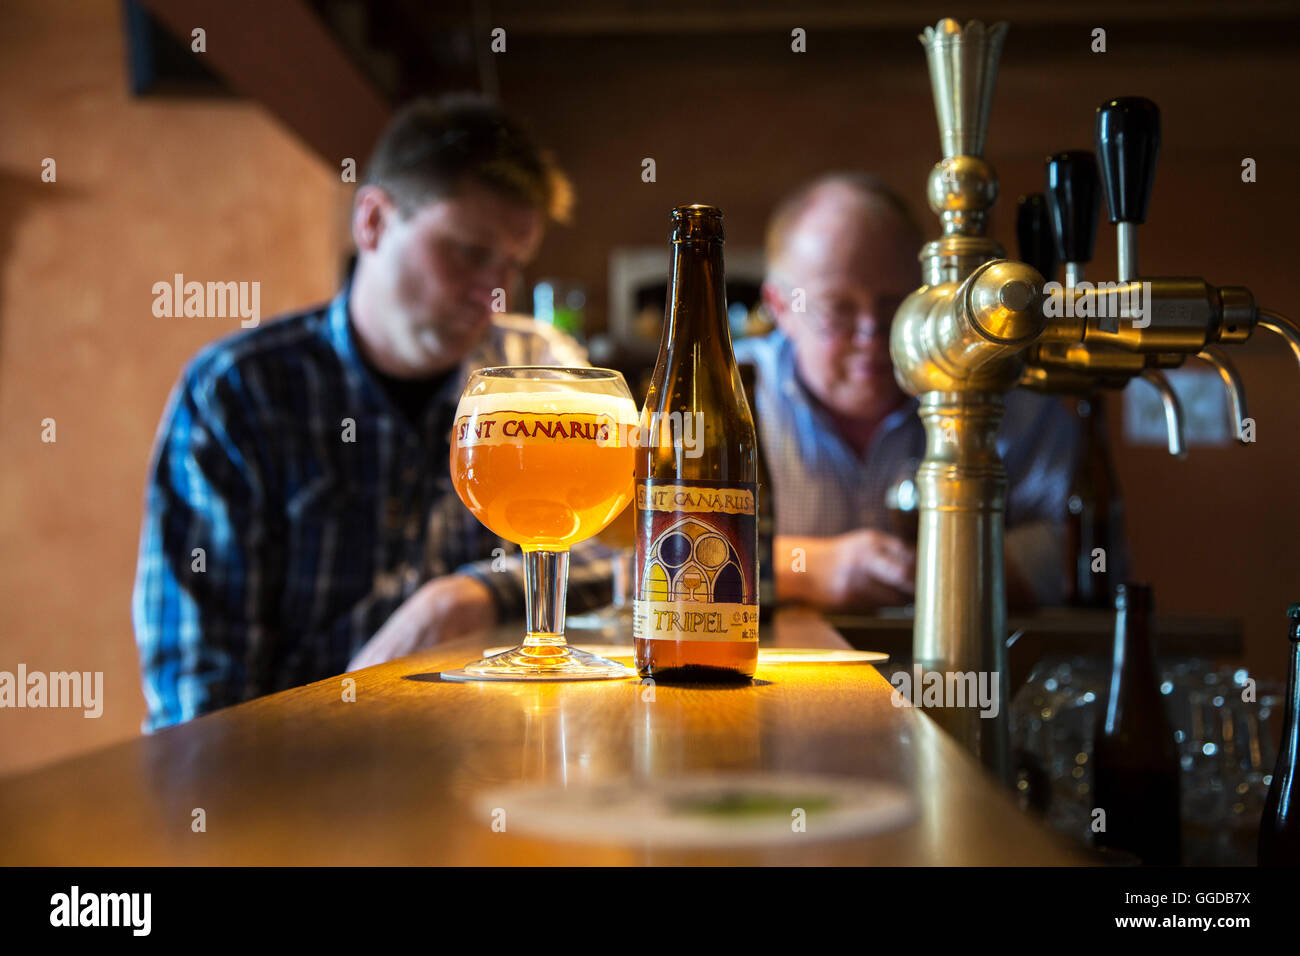 Lokalen Tripel Sint-Canarus Bier im Glas und Flasche auf Bar im Café am Gottem, Deinze, Belgien Stockfoto